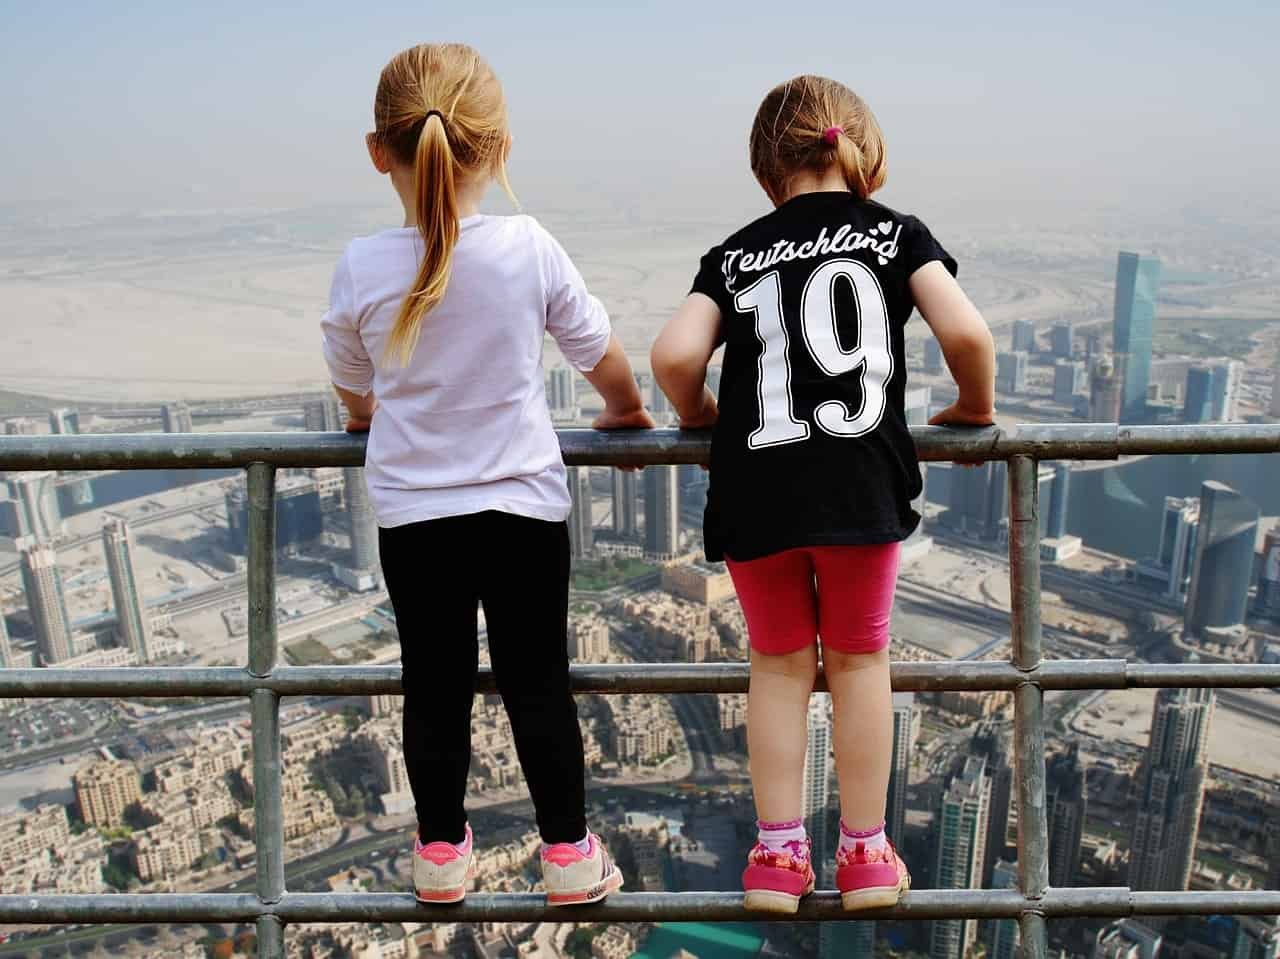 Twee kindjes staan op een railing en kijken uit over Dubai.